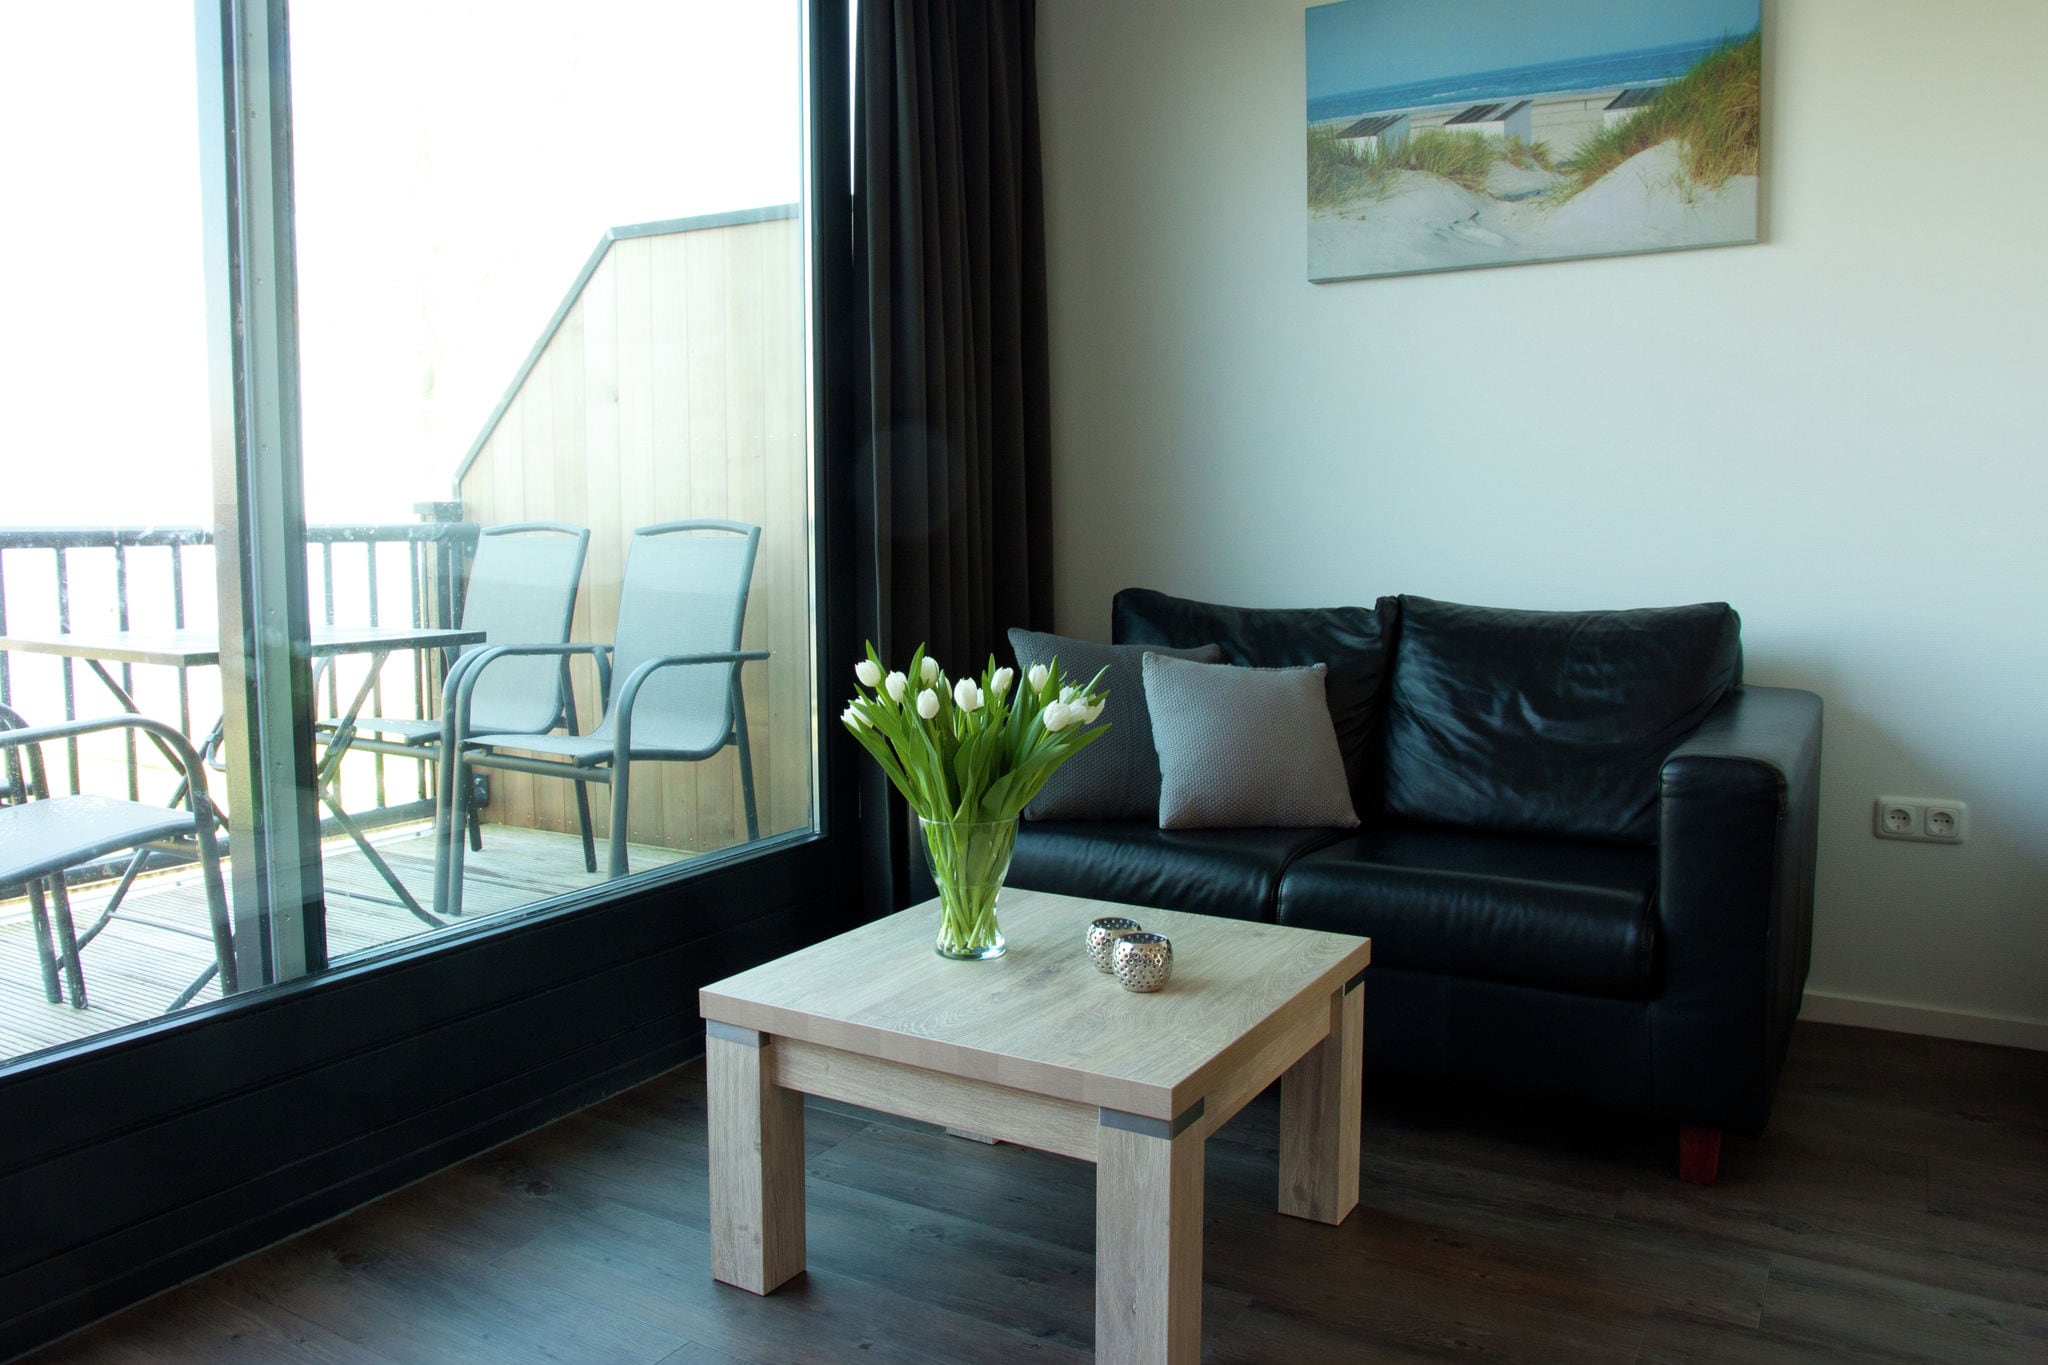 Knus appartement aan de Friese meren met een aanlegsteiger